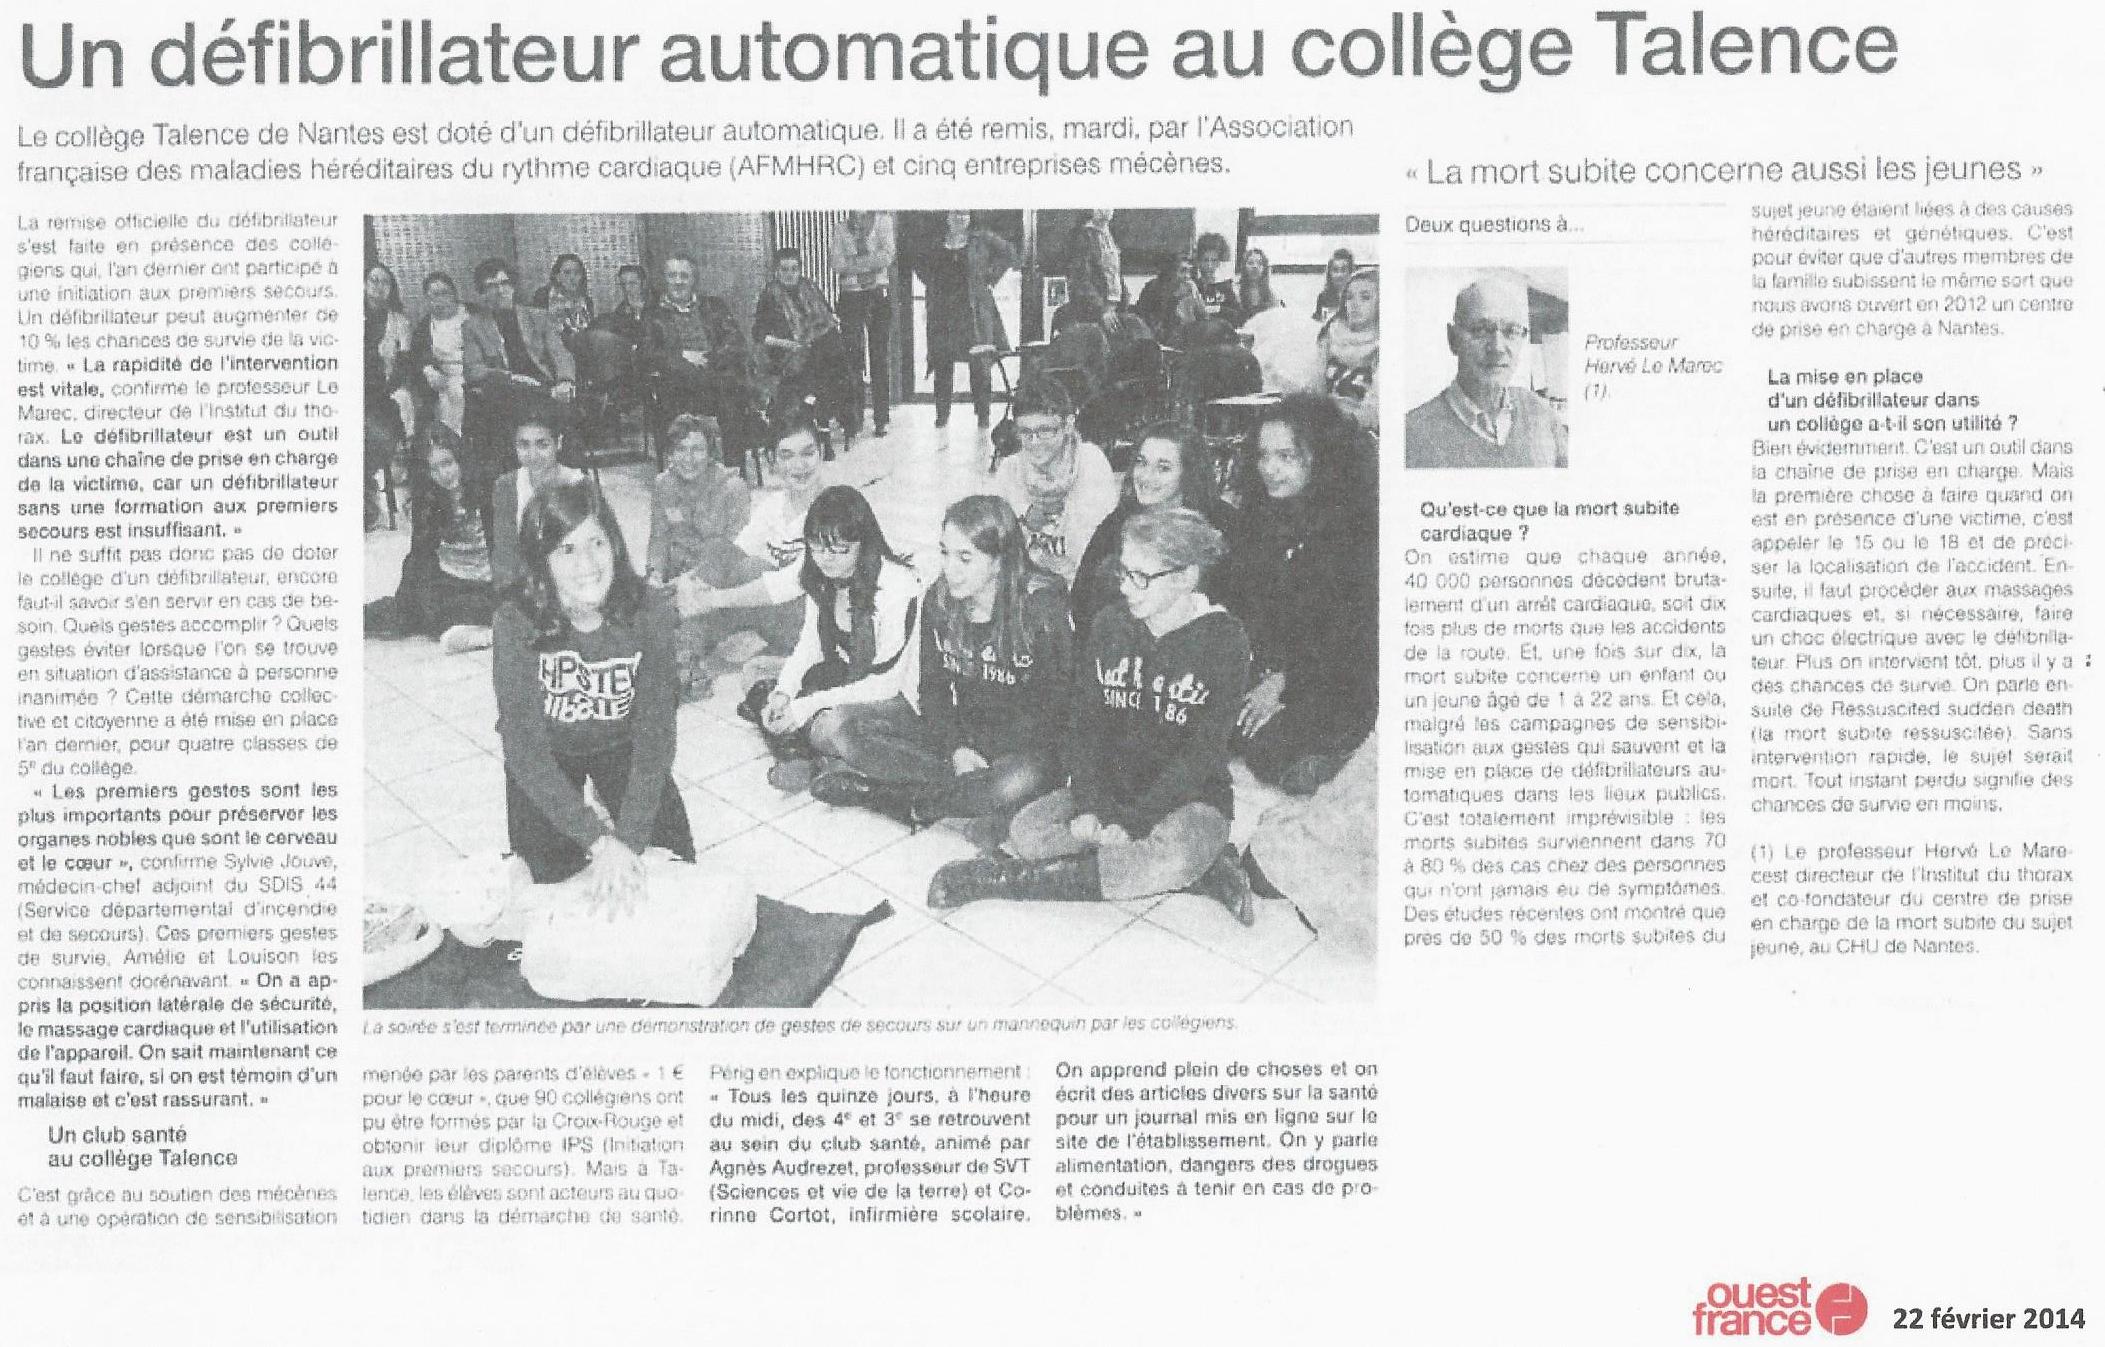 Defibrillateur Talence Nantes (Loire Atlantique) -Ouest France 22 février 2014